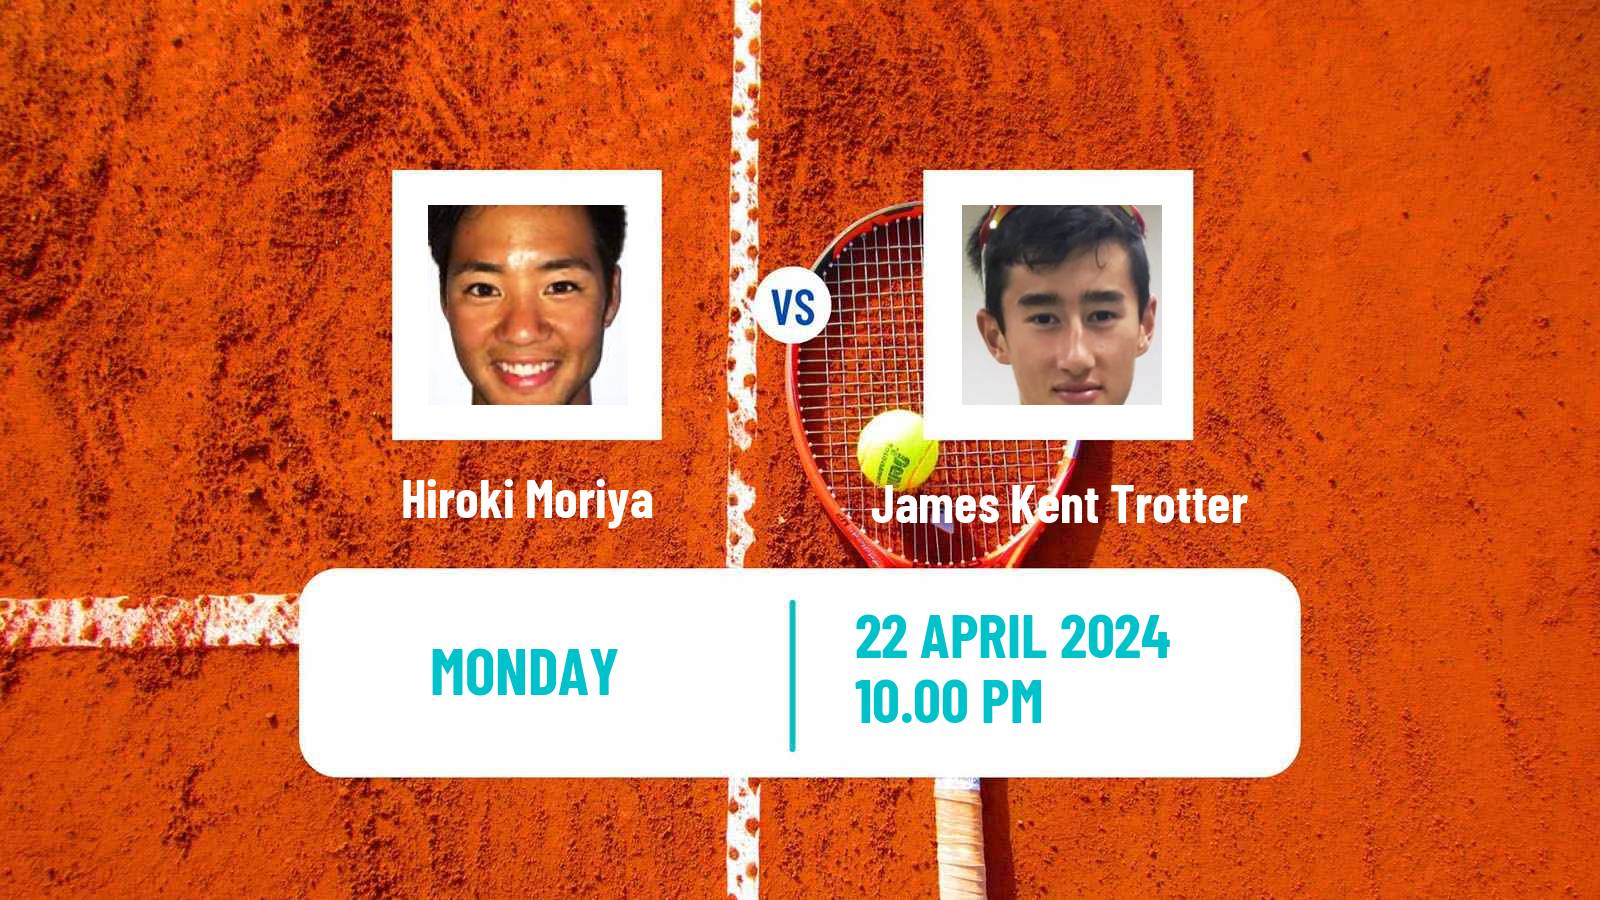 Tennis Shenzhen 3 Challenger Men Hiroki Moriya - James Kent Trotter